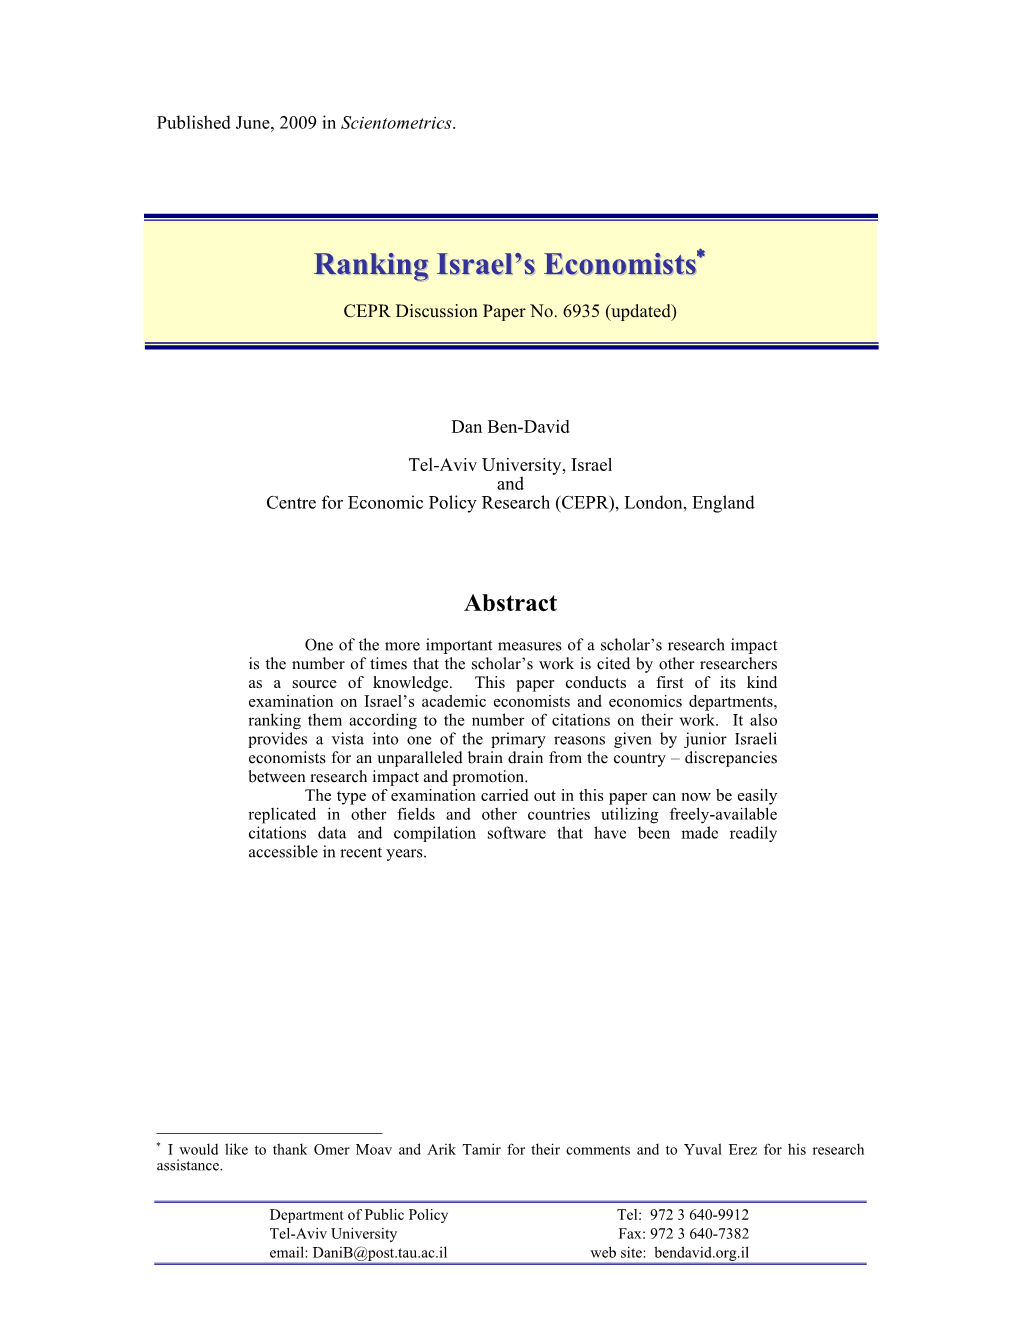 Ranking Israel's Economists